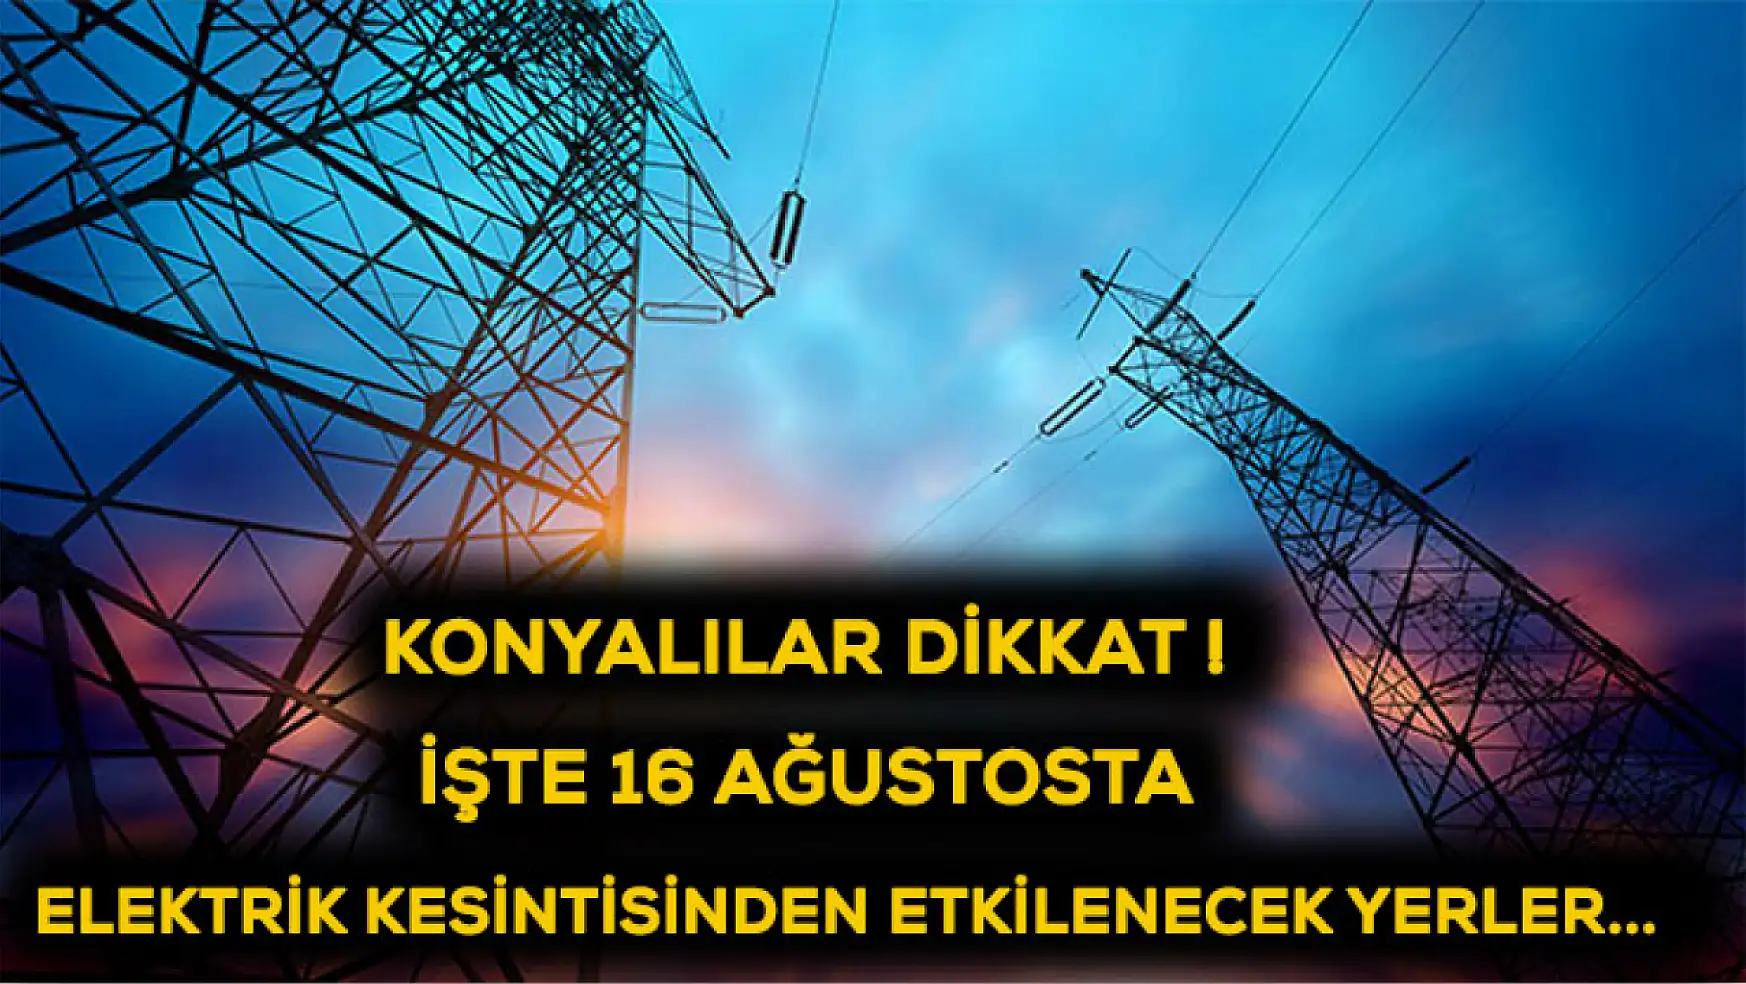 Konyalılar dikkat! İşte 16 Ağustosta elektrik kesintisinden etkilenecek yerler...